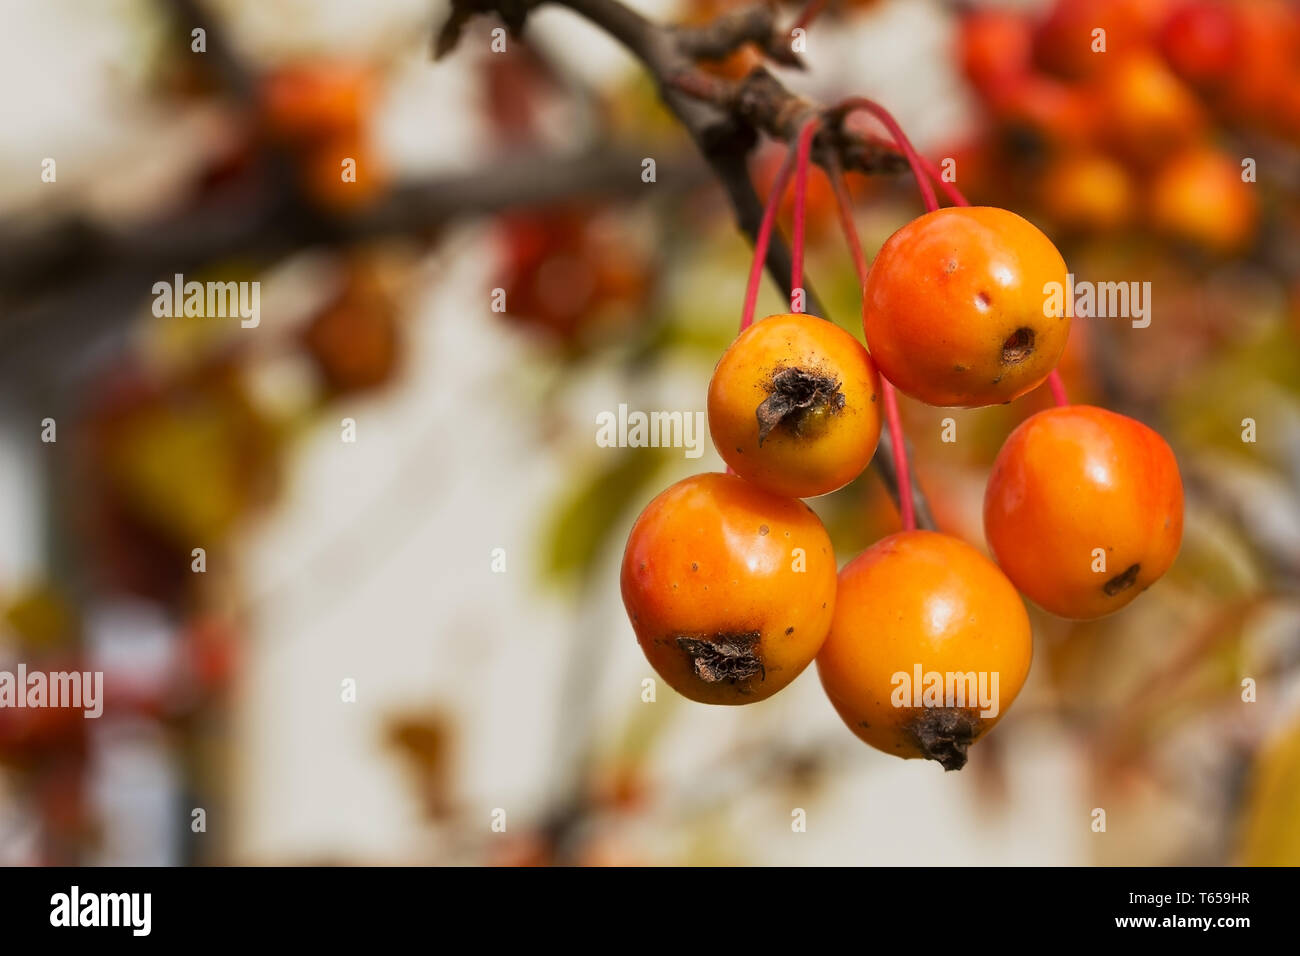 Chinese Apple, Malus prunifolia Stock Photo